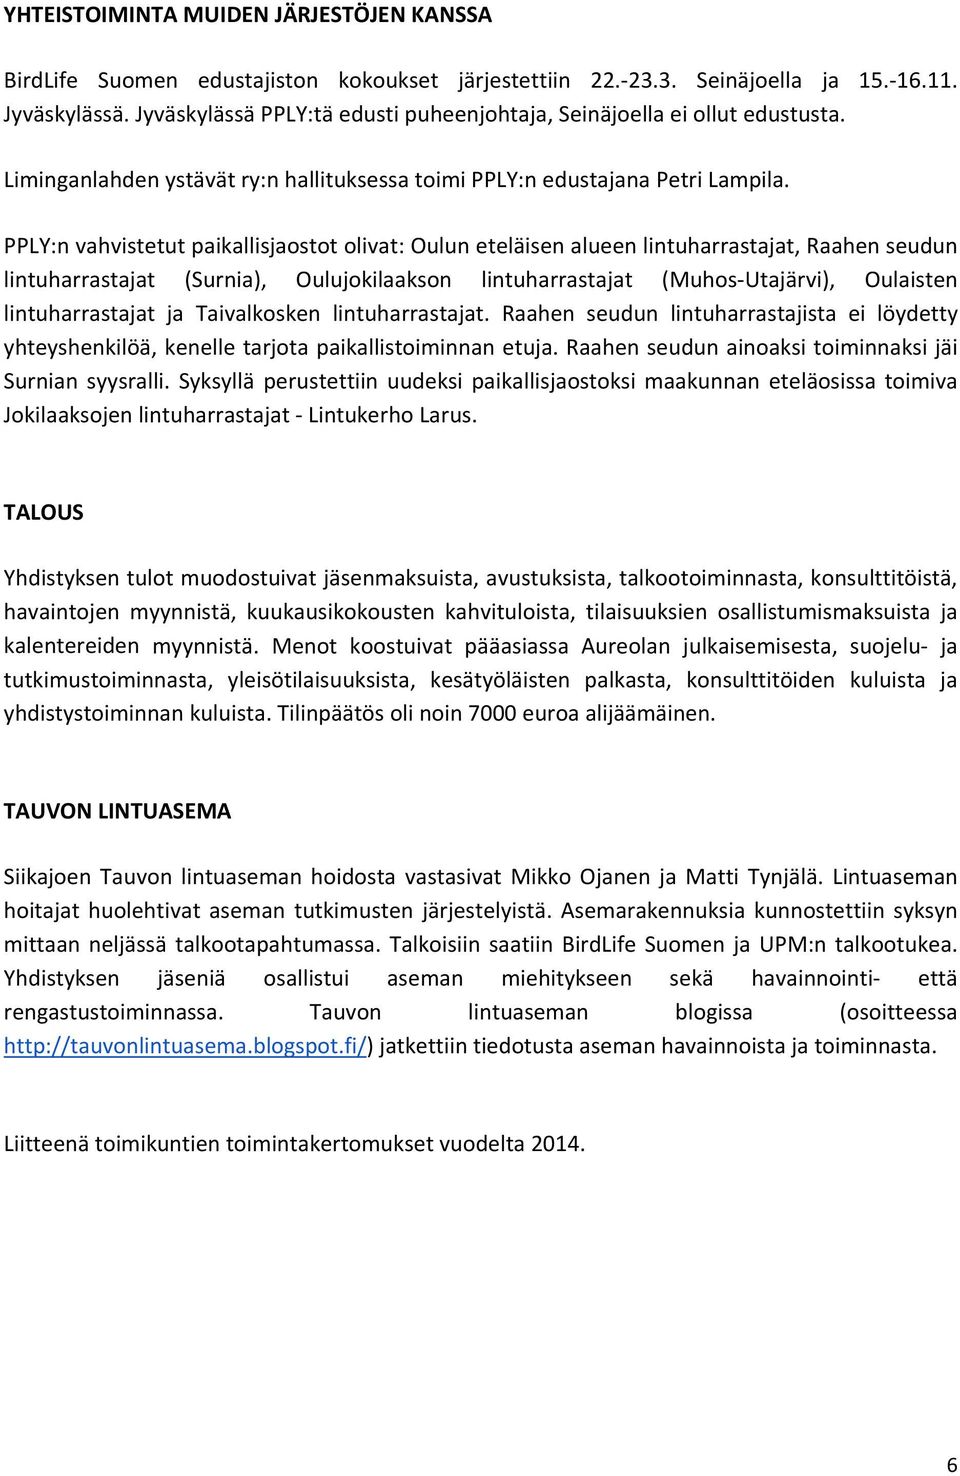 PPLY:n vahvistetut paikallisjaostot olivat: Oulun eteläisen alueen lintuharrastajat, Raahen seudun lintuharrastajat (Surnia), Oulujokilaakson lintuharrastajat (Muhos Utajärvi), Oulaisten